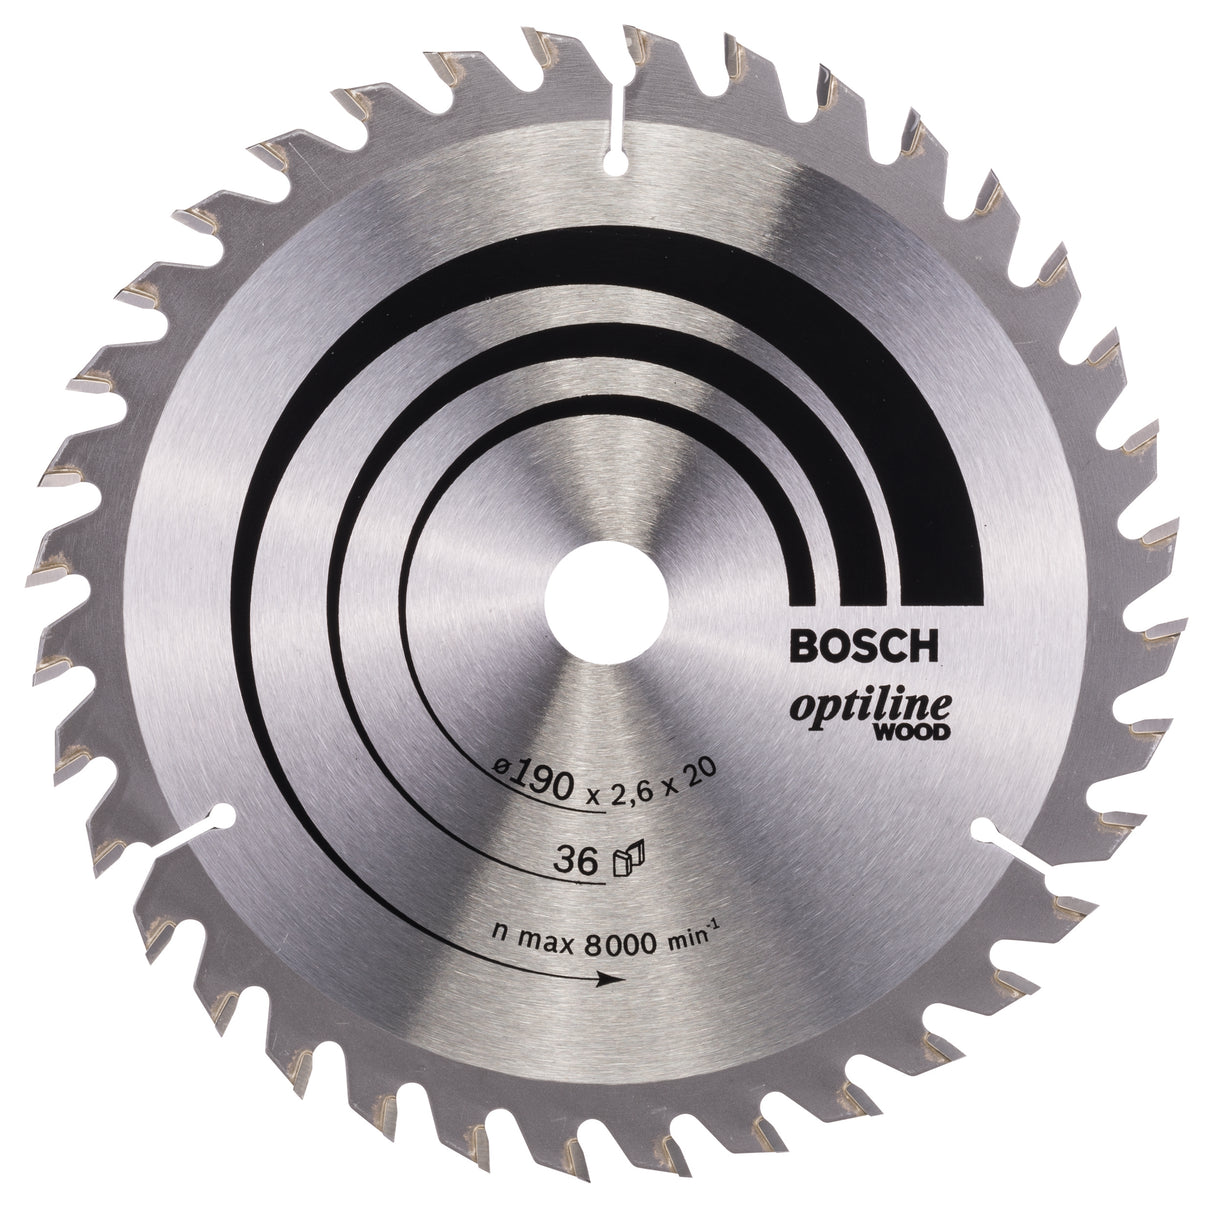 Bosch Professional Optiline Wood Circular Saw Blade - 190 x 20/16 x 2.6mm, 36 Teeth